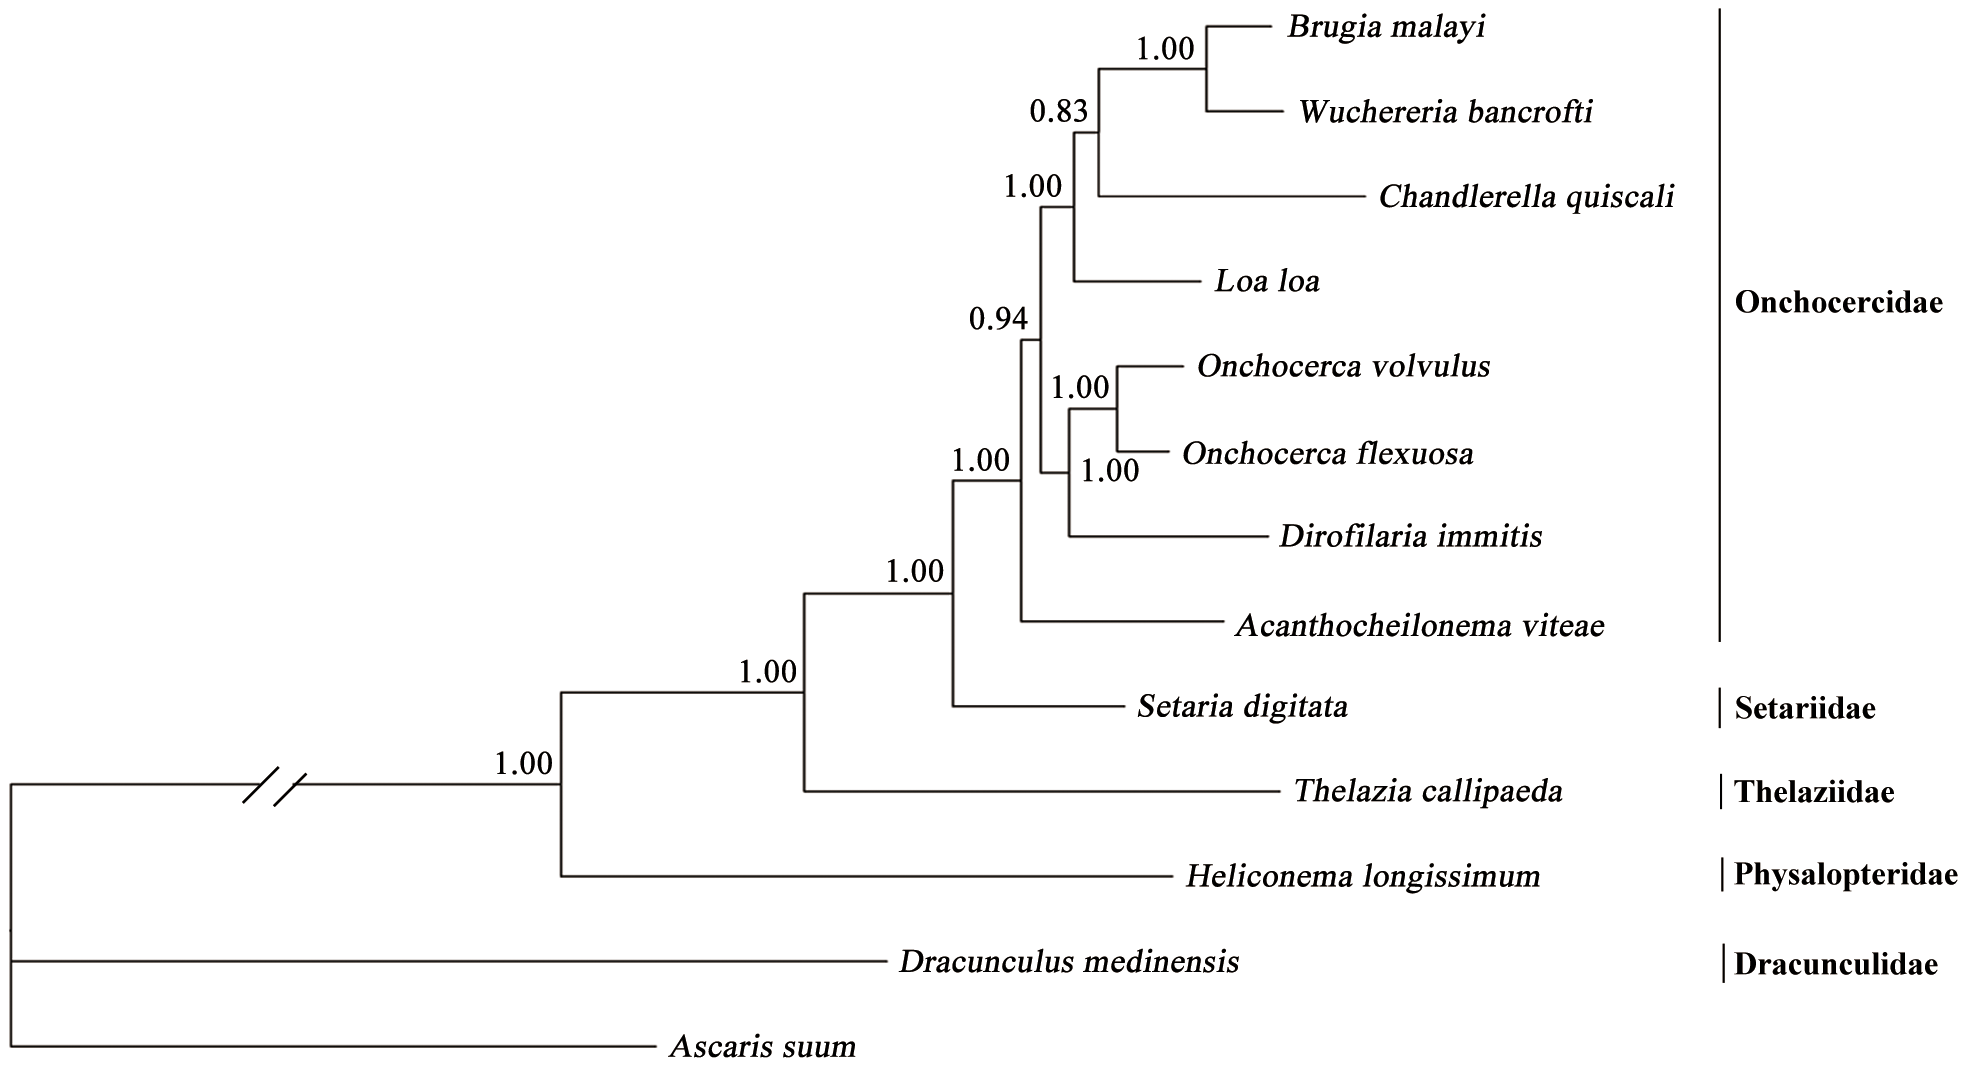 Phylogenetic tree of D. medinensis